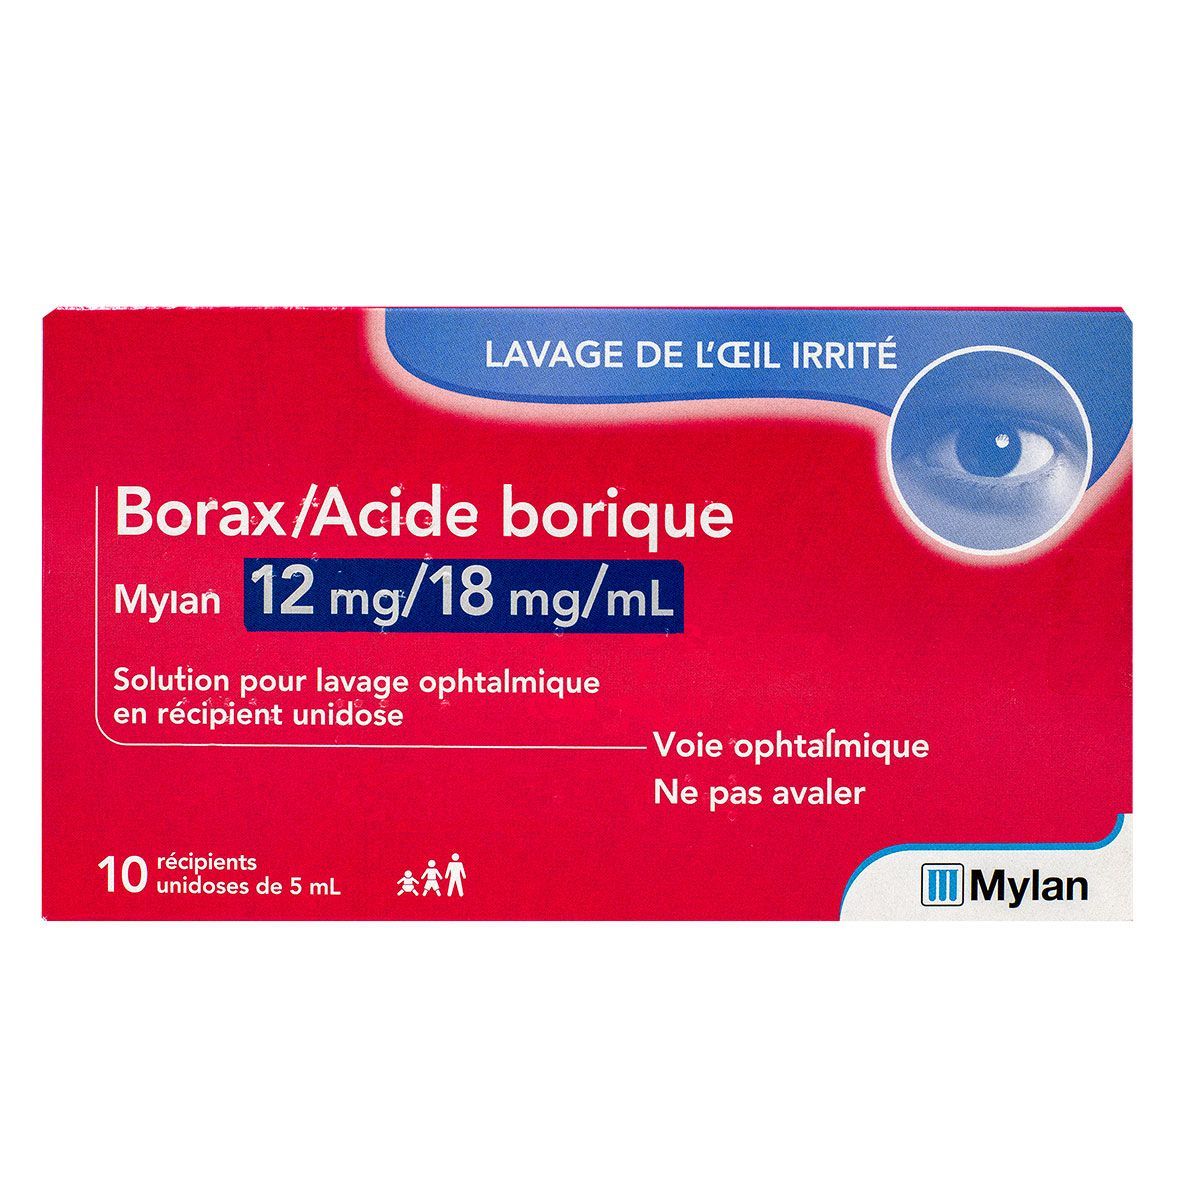 borax acide borique mylan est une solution pour lavage ophtalmique